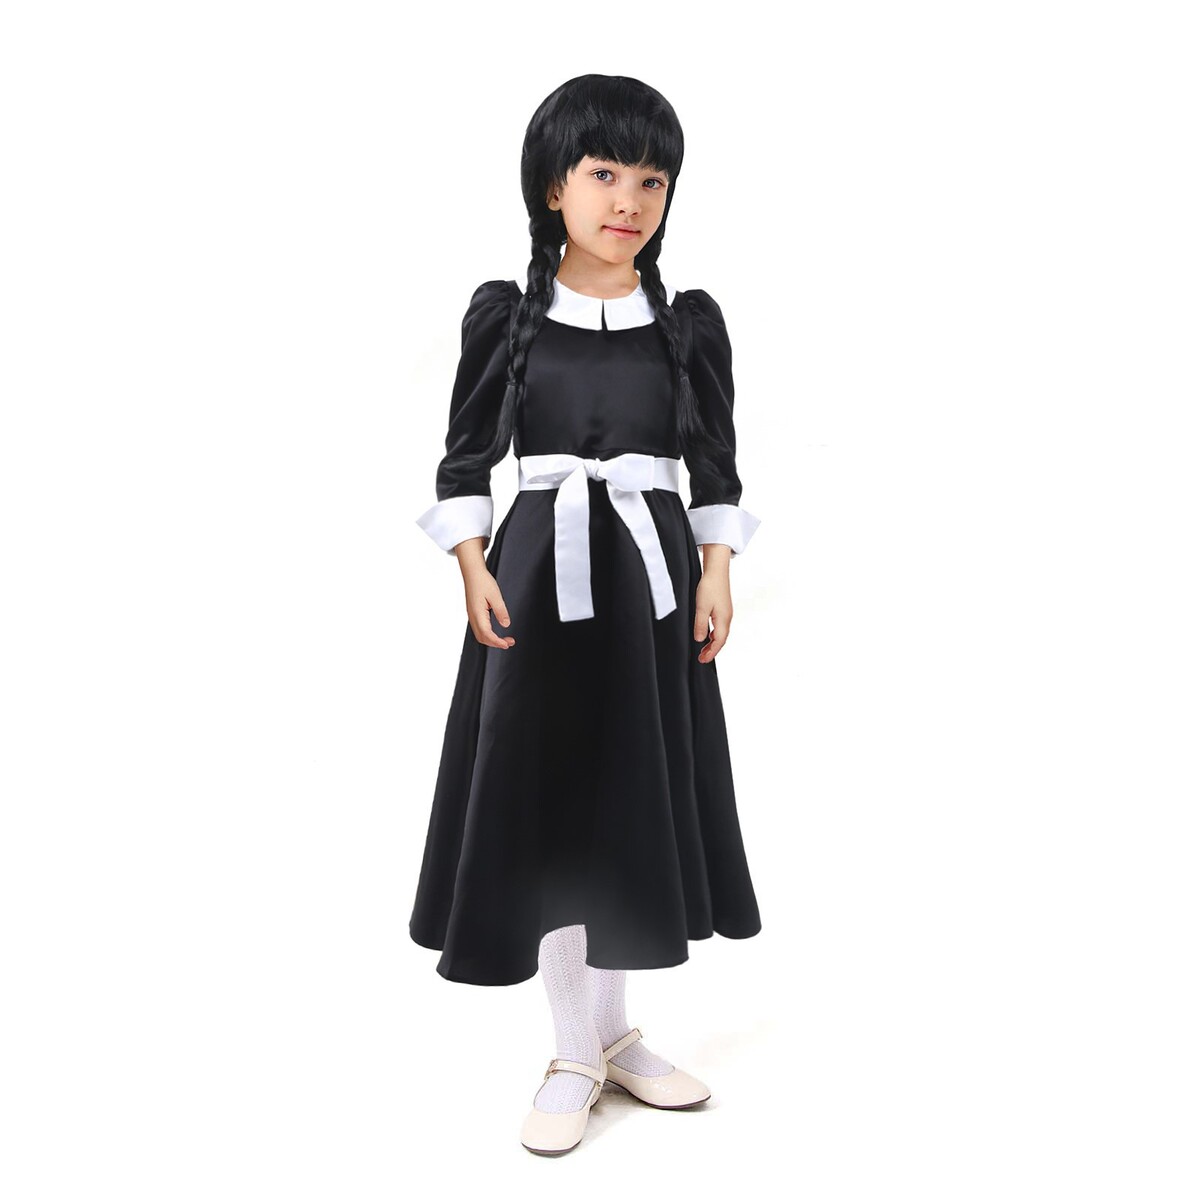 Карнавальное черное платье с белым воротником,атлас,п/э,р-р34,р134 атлас русалок